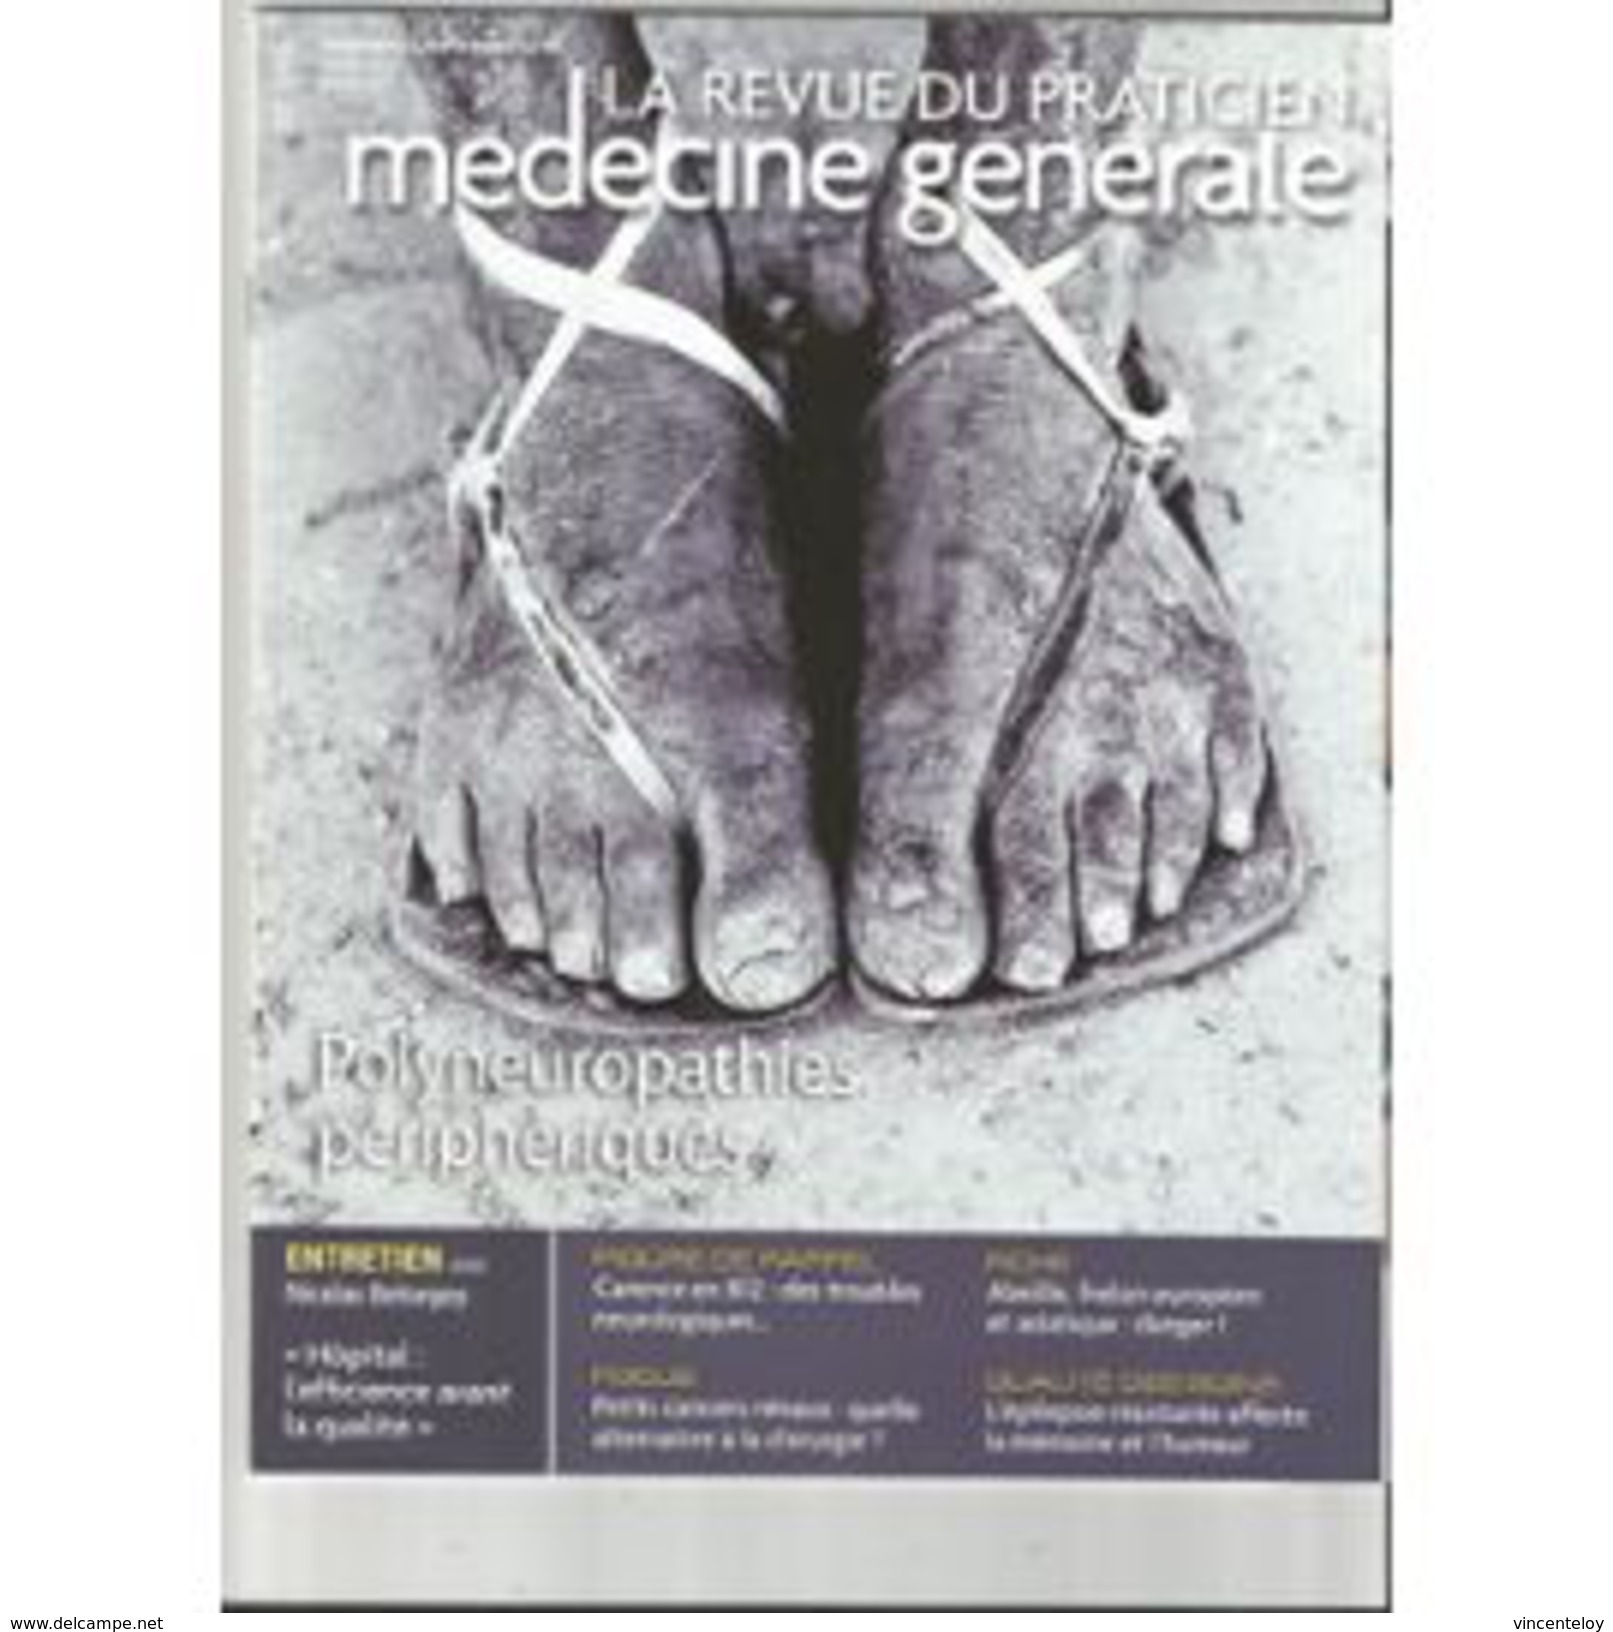 La Revue Du Praticien Septembre 2015 - Geneeskunde & Gezondheid